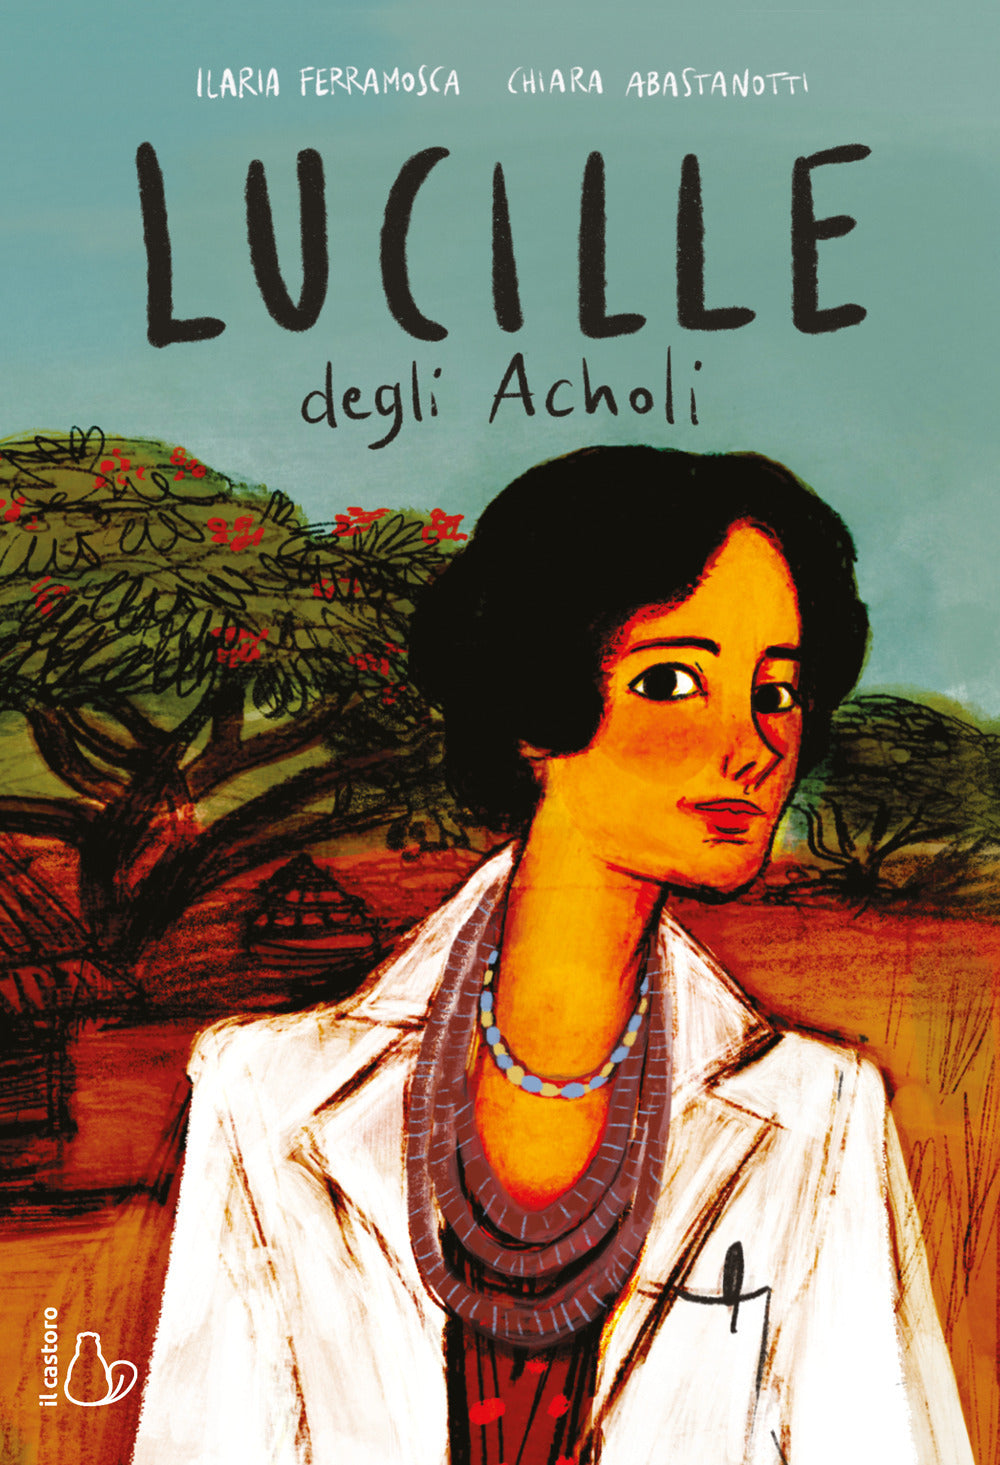 Lucille degli Acholi.